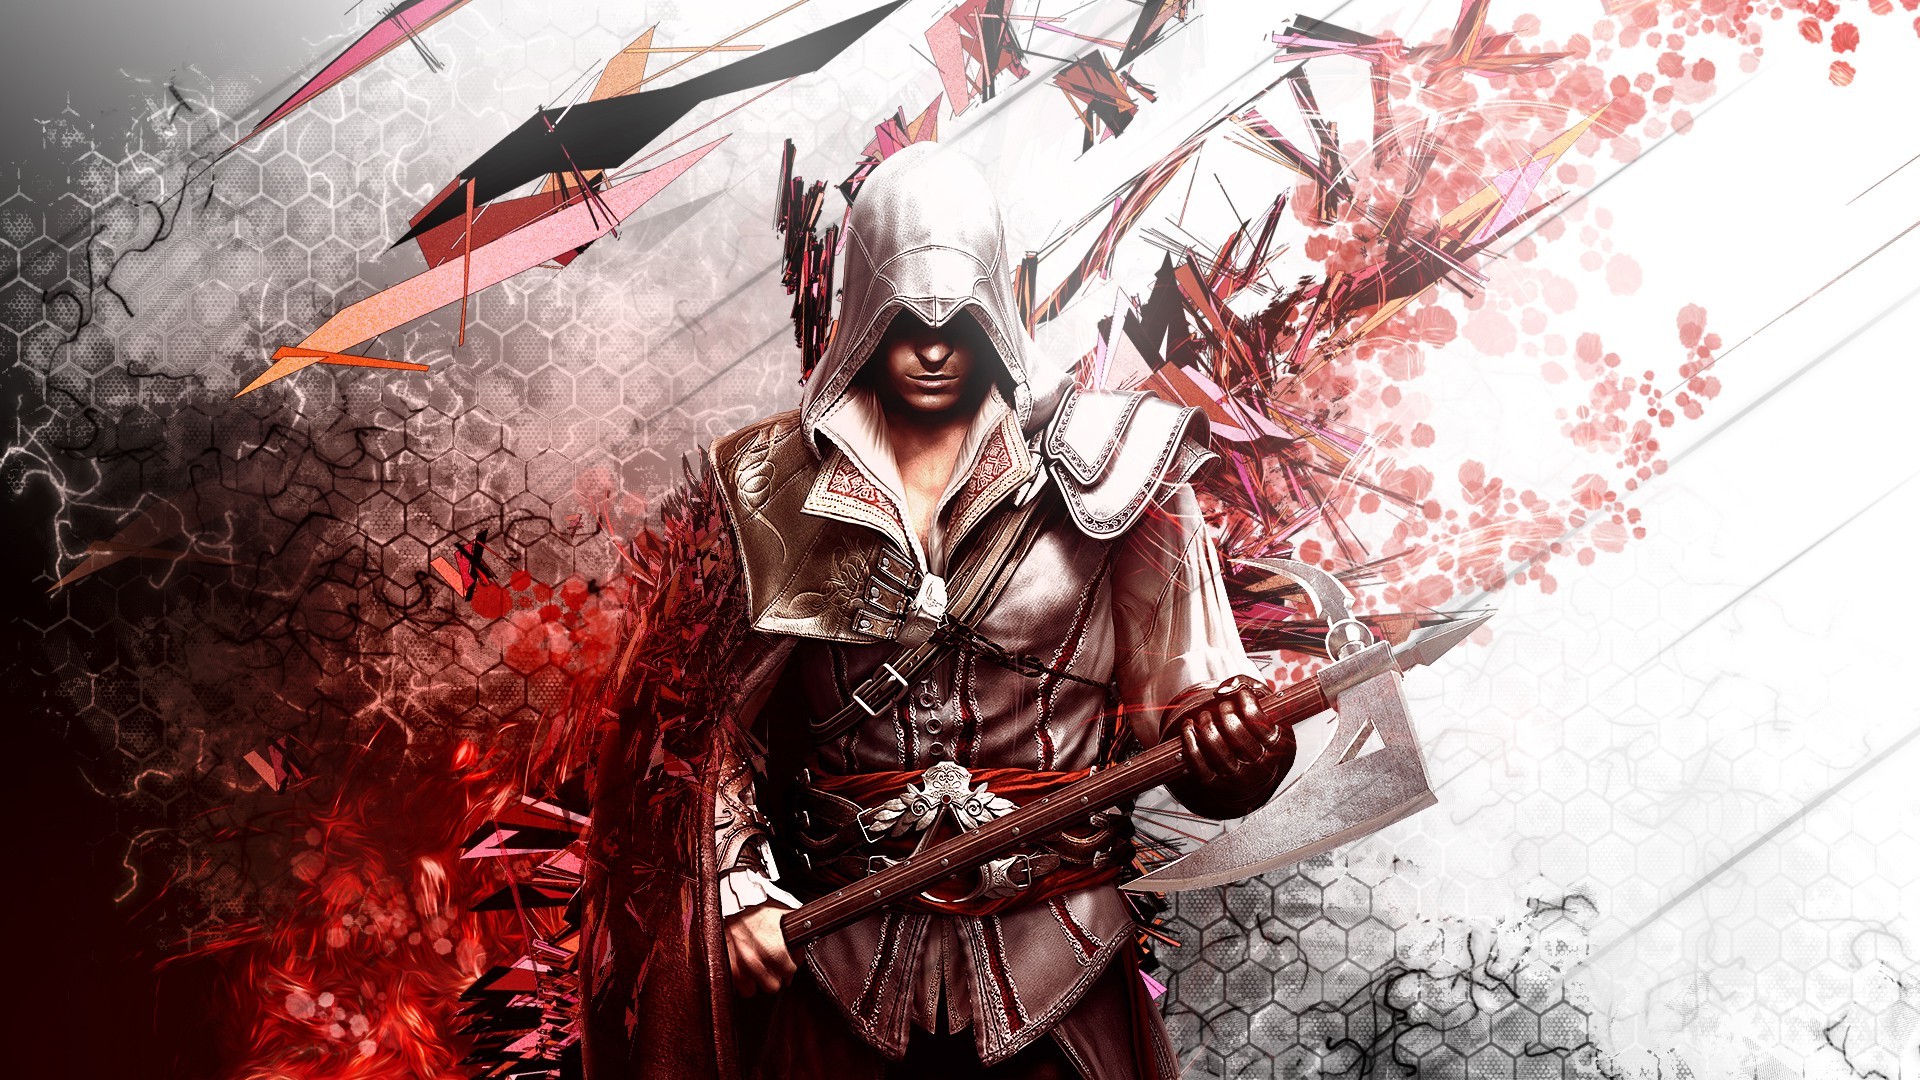 45 fonds d'écran Assassin's Creed pour vos PC et smartphones